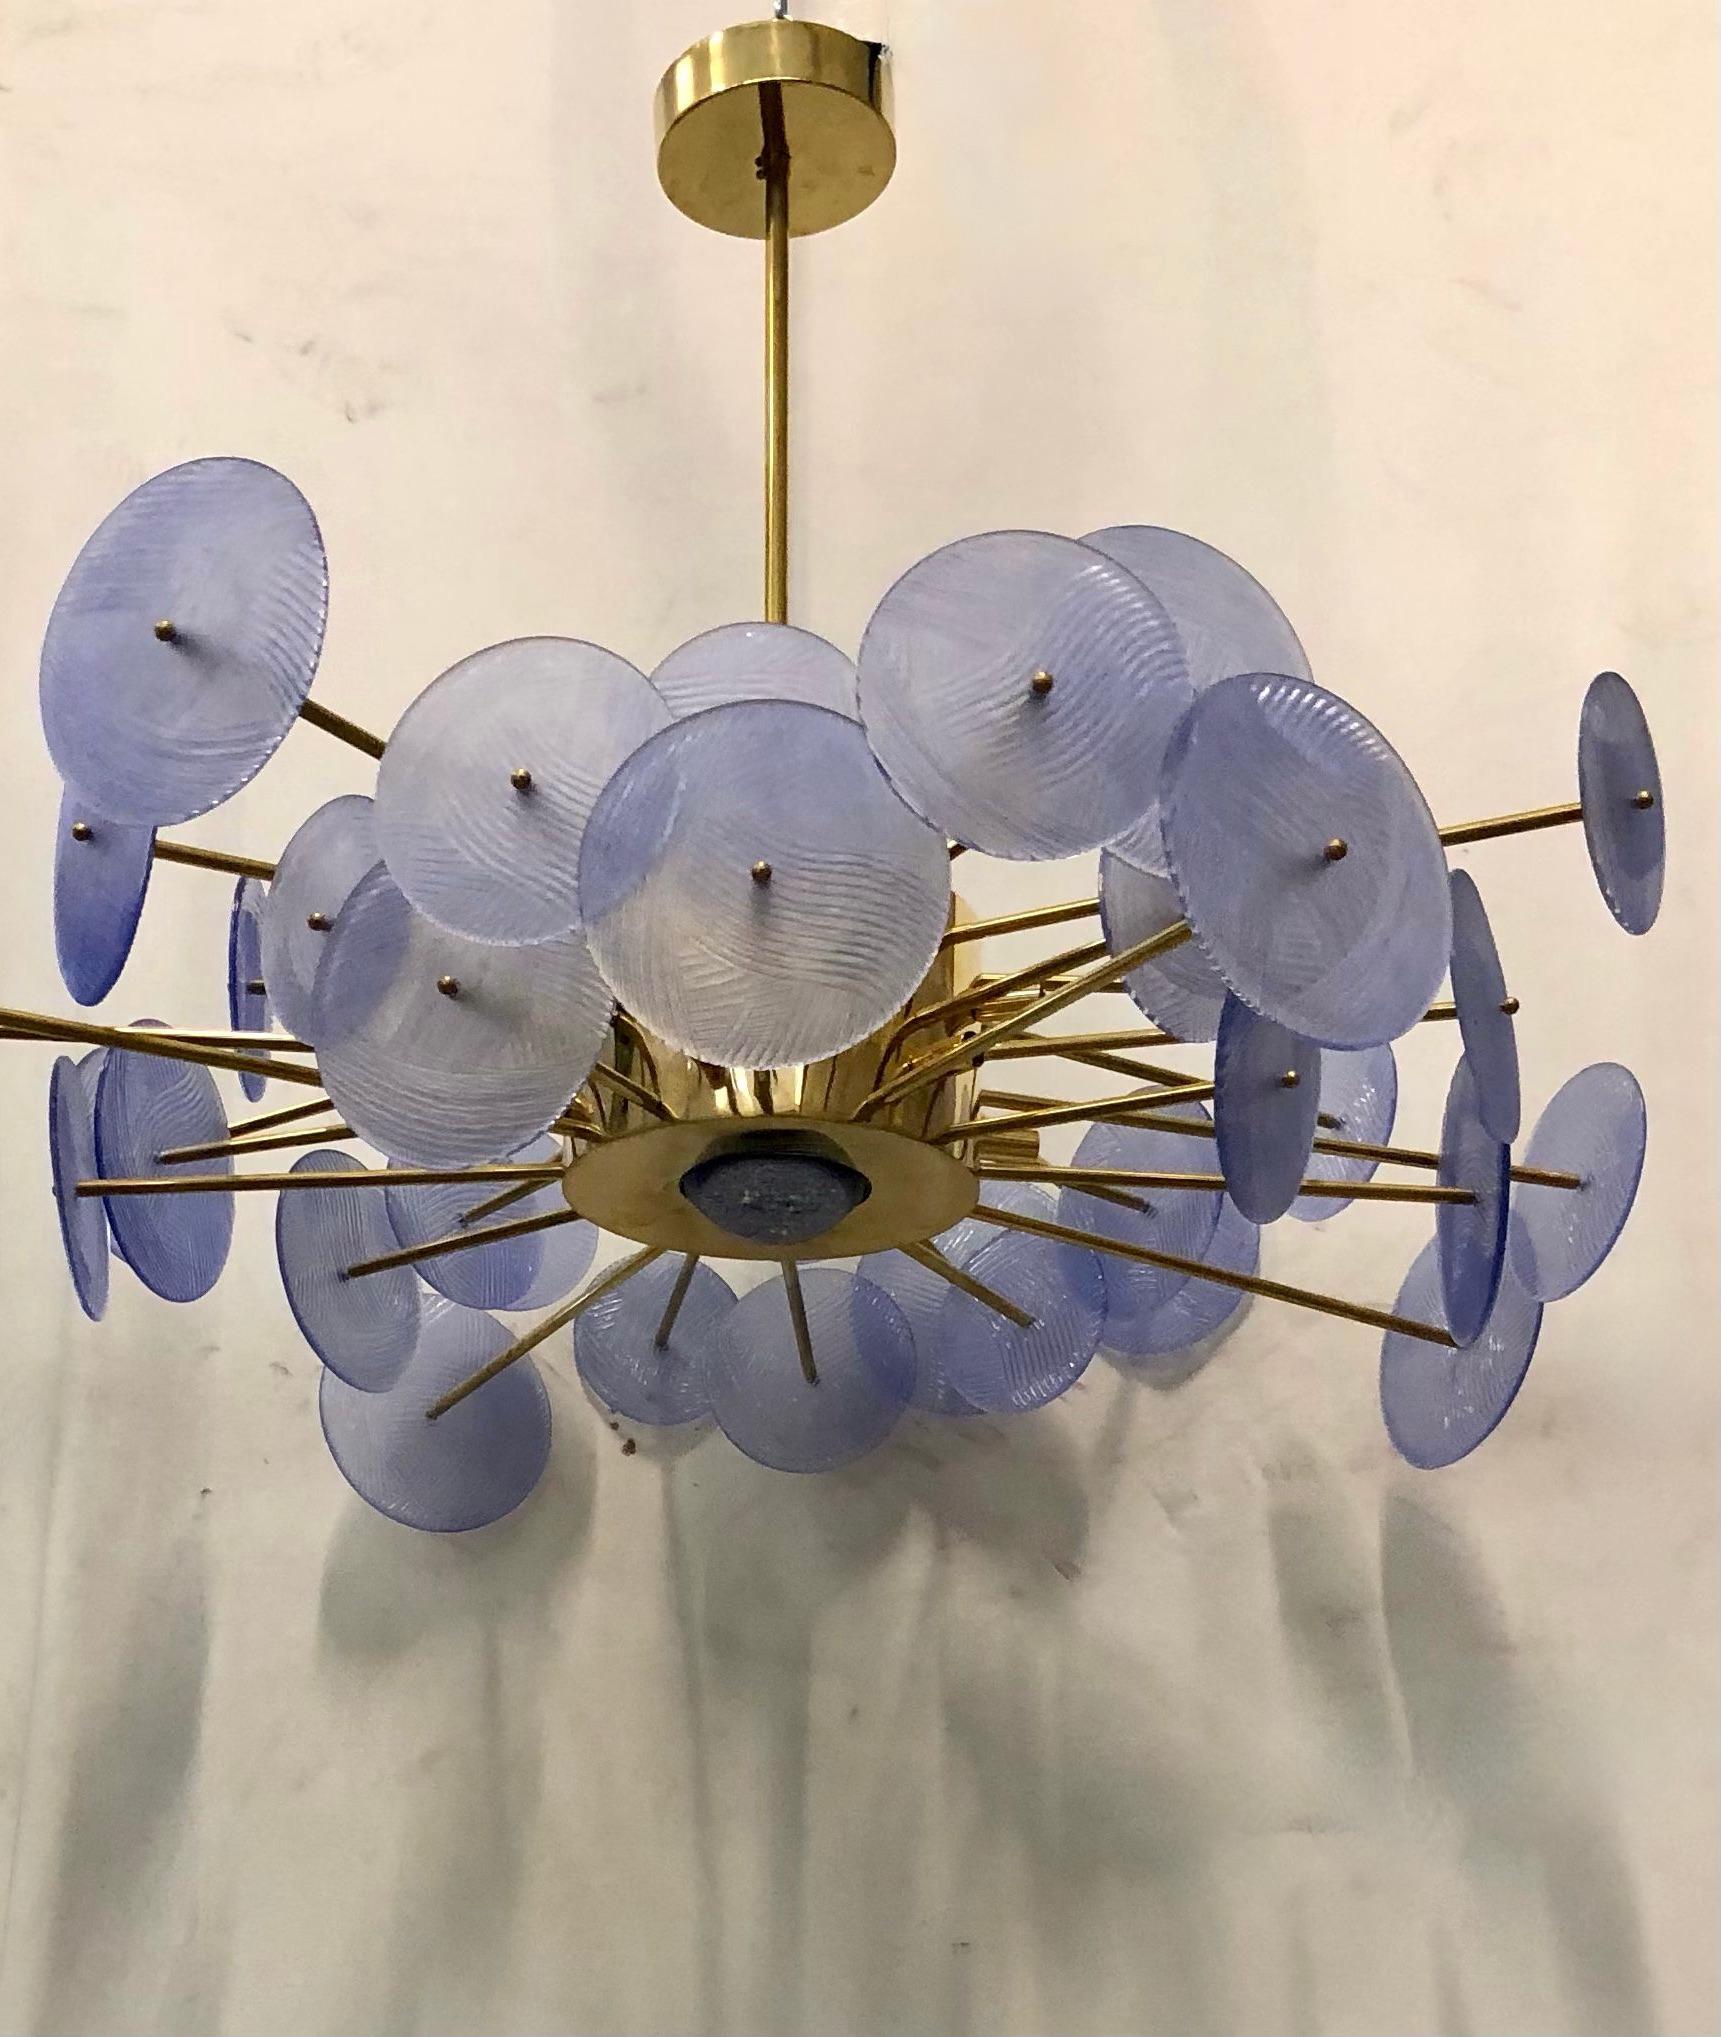 Besonderer runder Sputnik mit Messingstruktur und Scheiben aus Murano-Glas. Es sieht aus wie ein System von Planeten, die kreisförmig gravitieren. Das Design mit dem großen zentralen Messingkörper ist sehr schön.

Kronleuchter mit einer Struktur aus